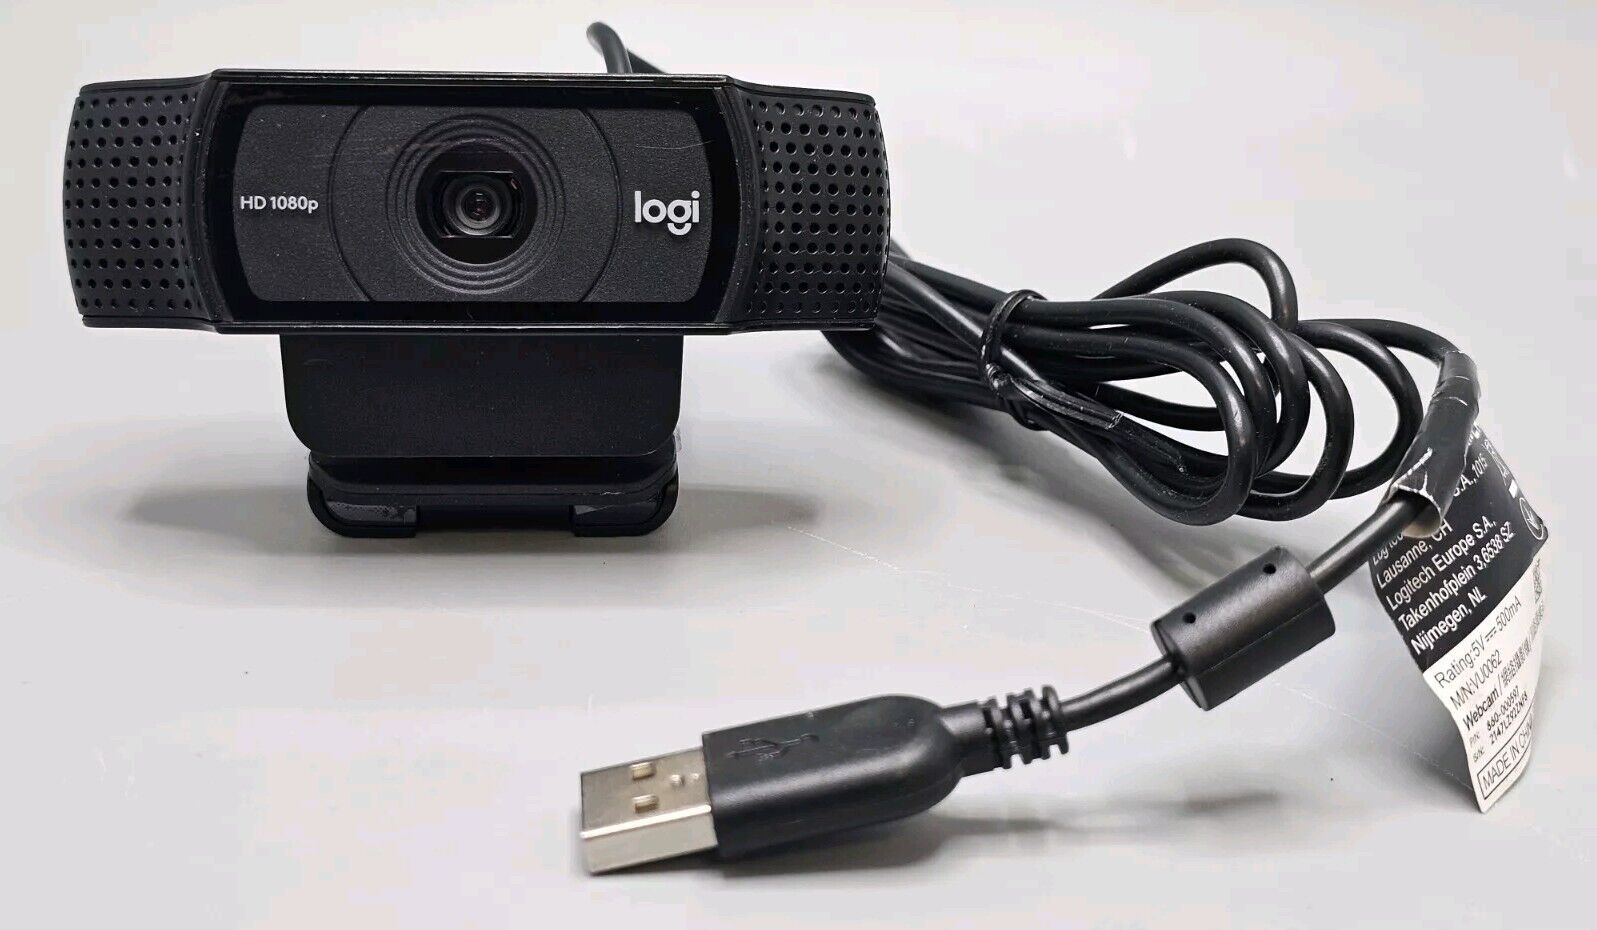 Logitech Logi HD 1080p USB Webcam Black VU0062 Excellent Working Shape SHIPSFREE